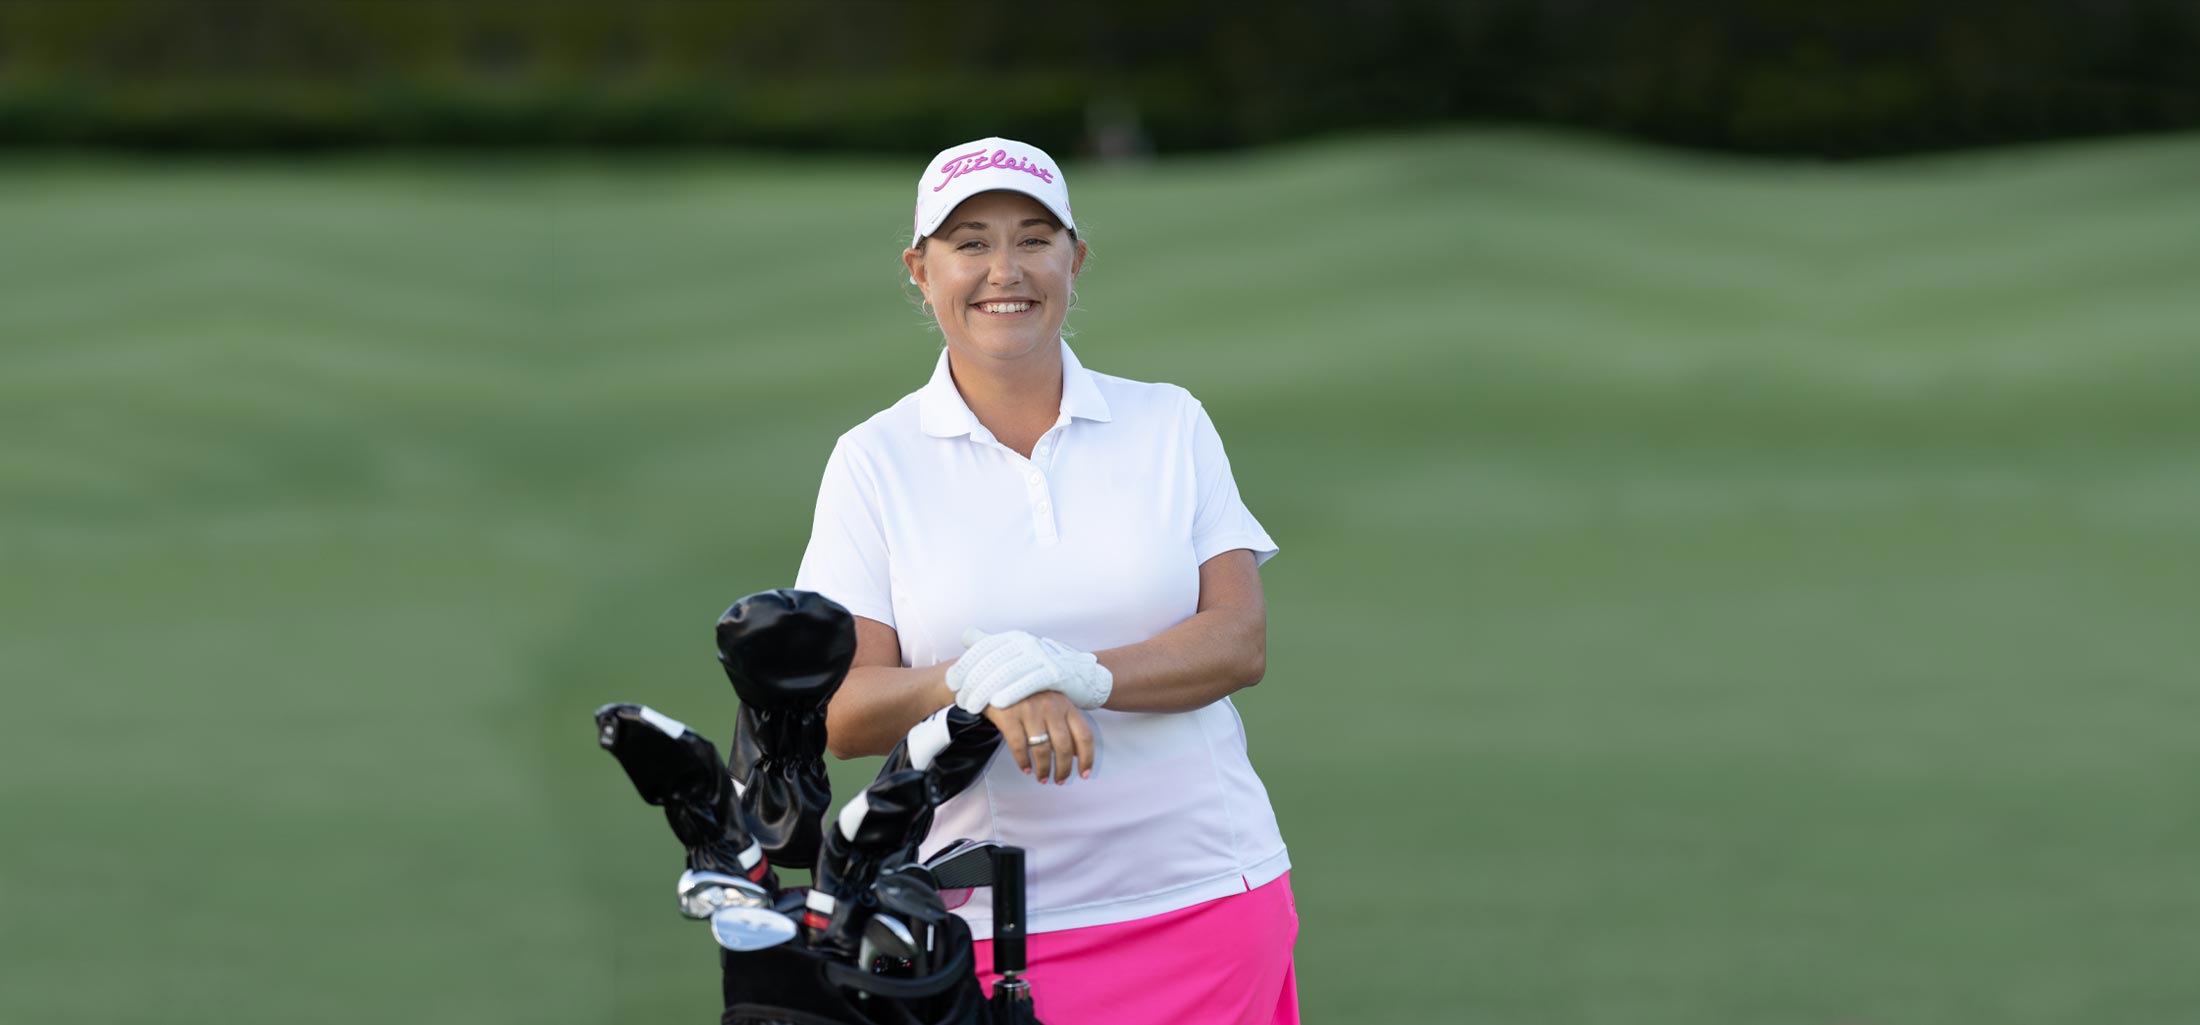 Jennifer Hudson on golf course